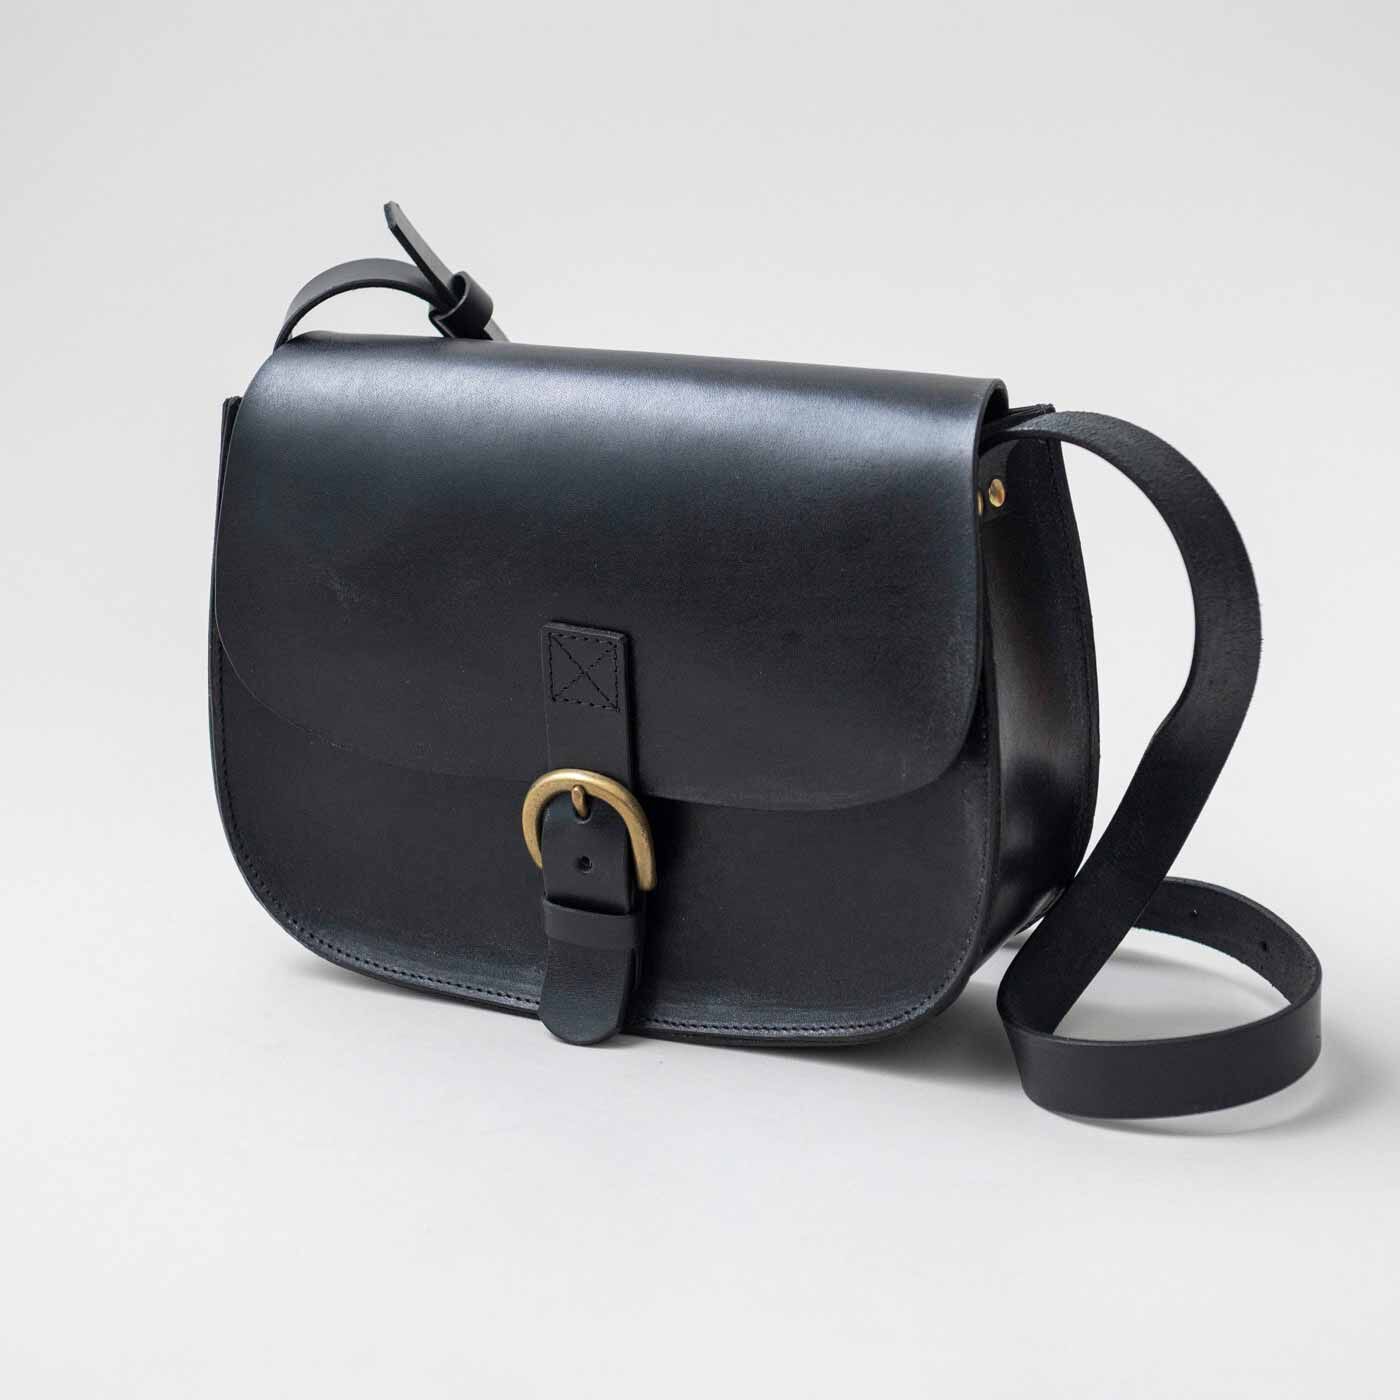 ＆Stories|福岡の鞄作家と作った　職人本革のフォートバッグ〈ブラック〉|外国の古い鞄をイメージしたデザインは、どこかクラシカルなたたずまい。